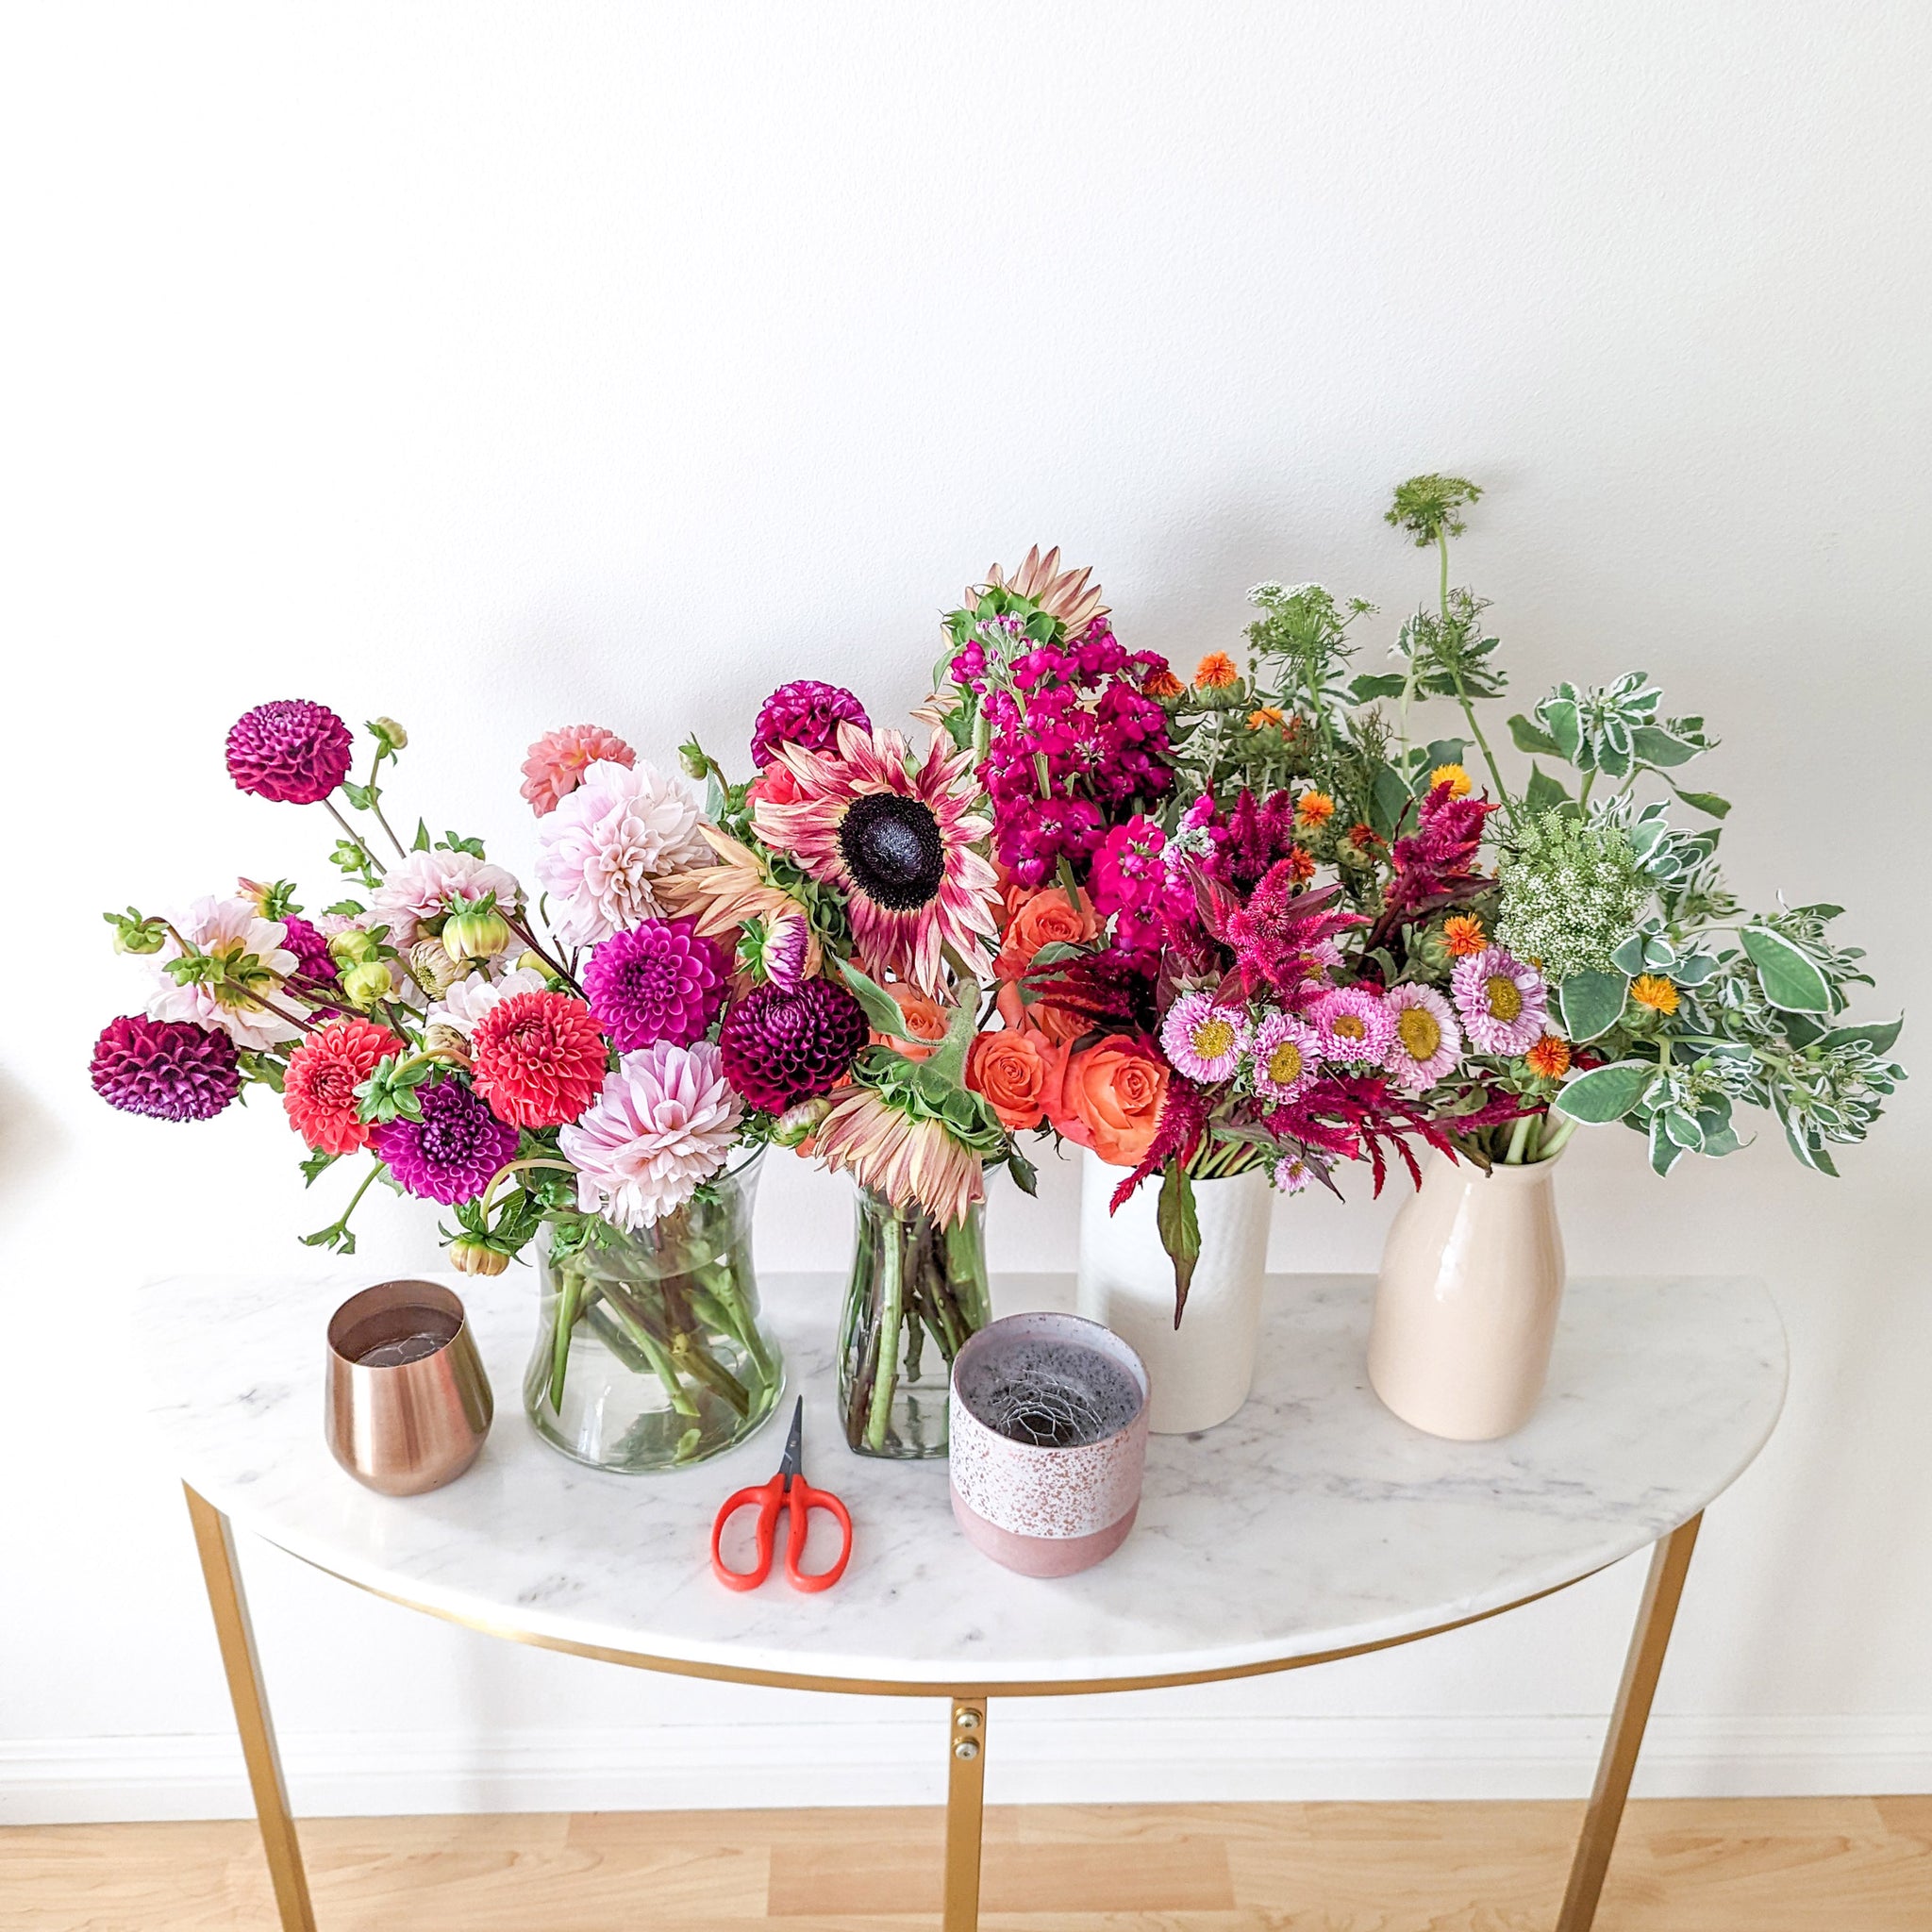 Fresh flowers in vases - flower class student work